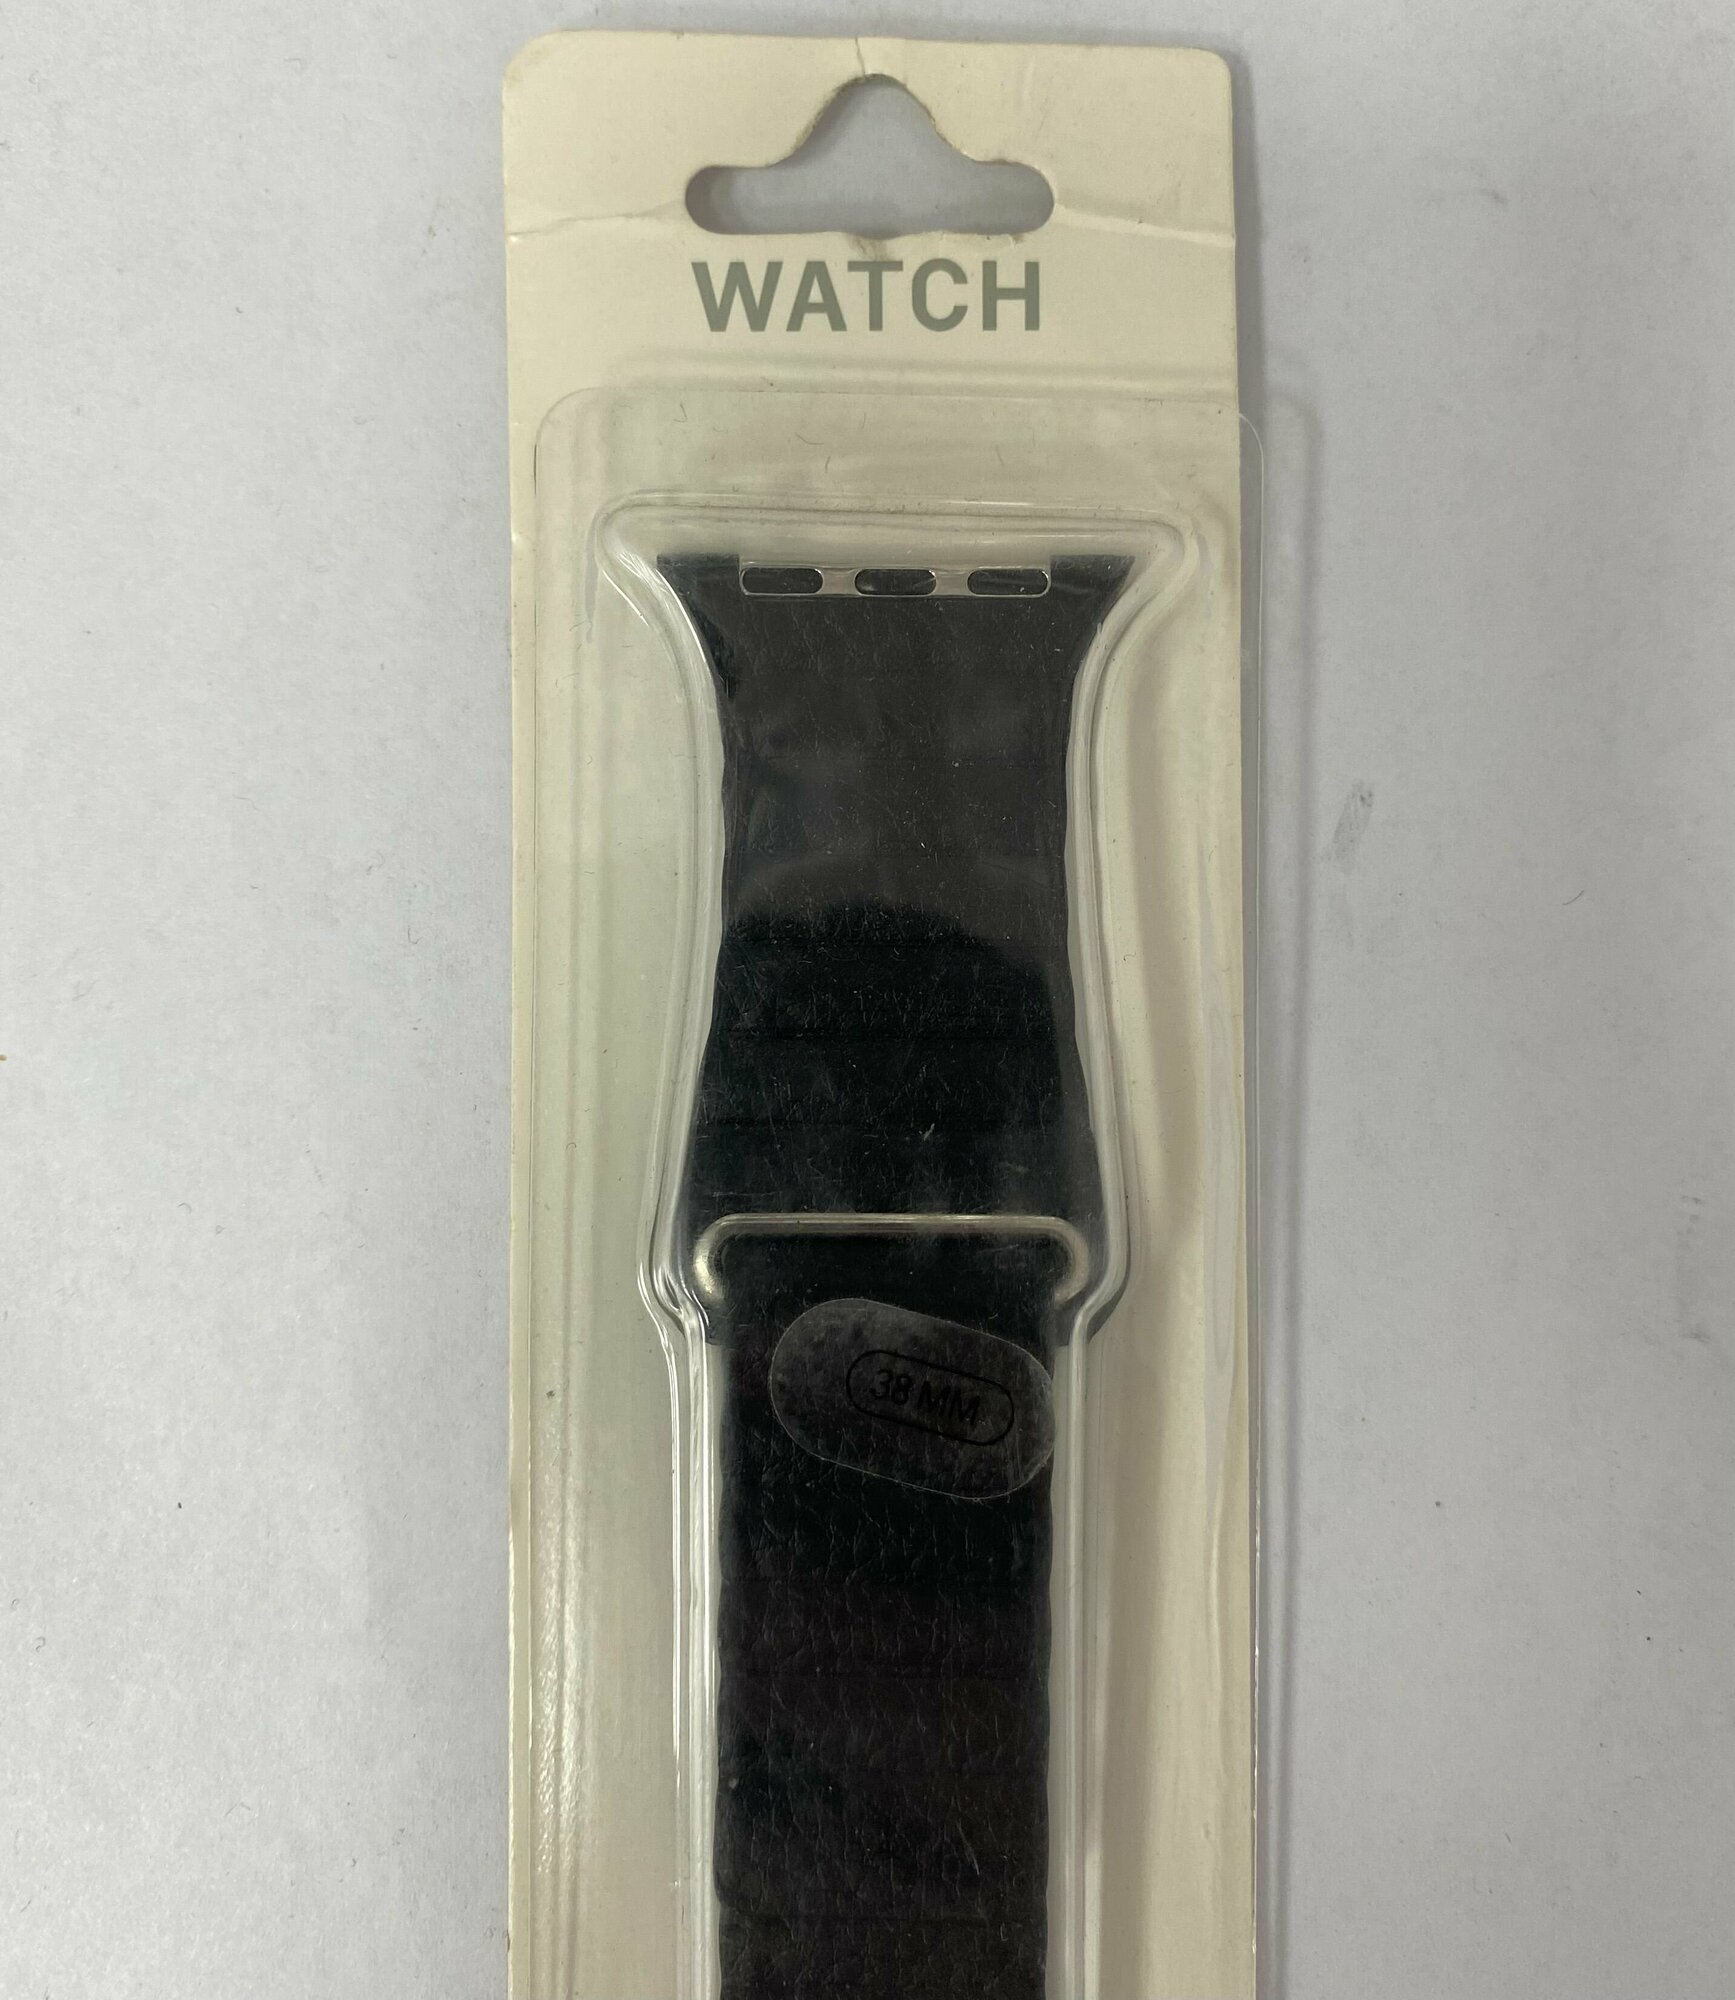 Премиум кожаный ремешок на магнитной застежке для Apple Watch 38-40mm